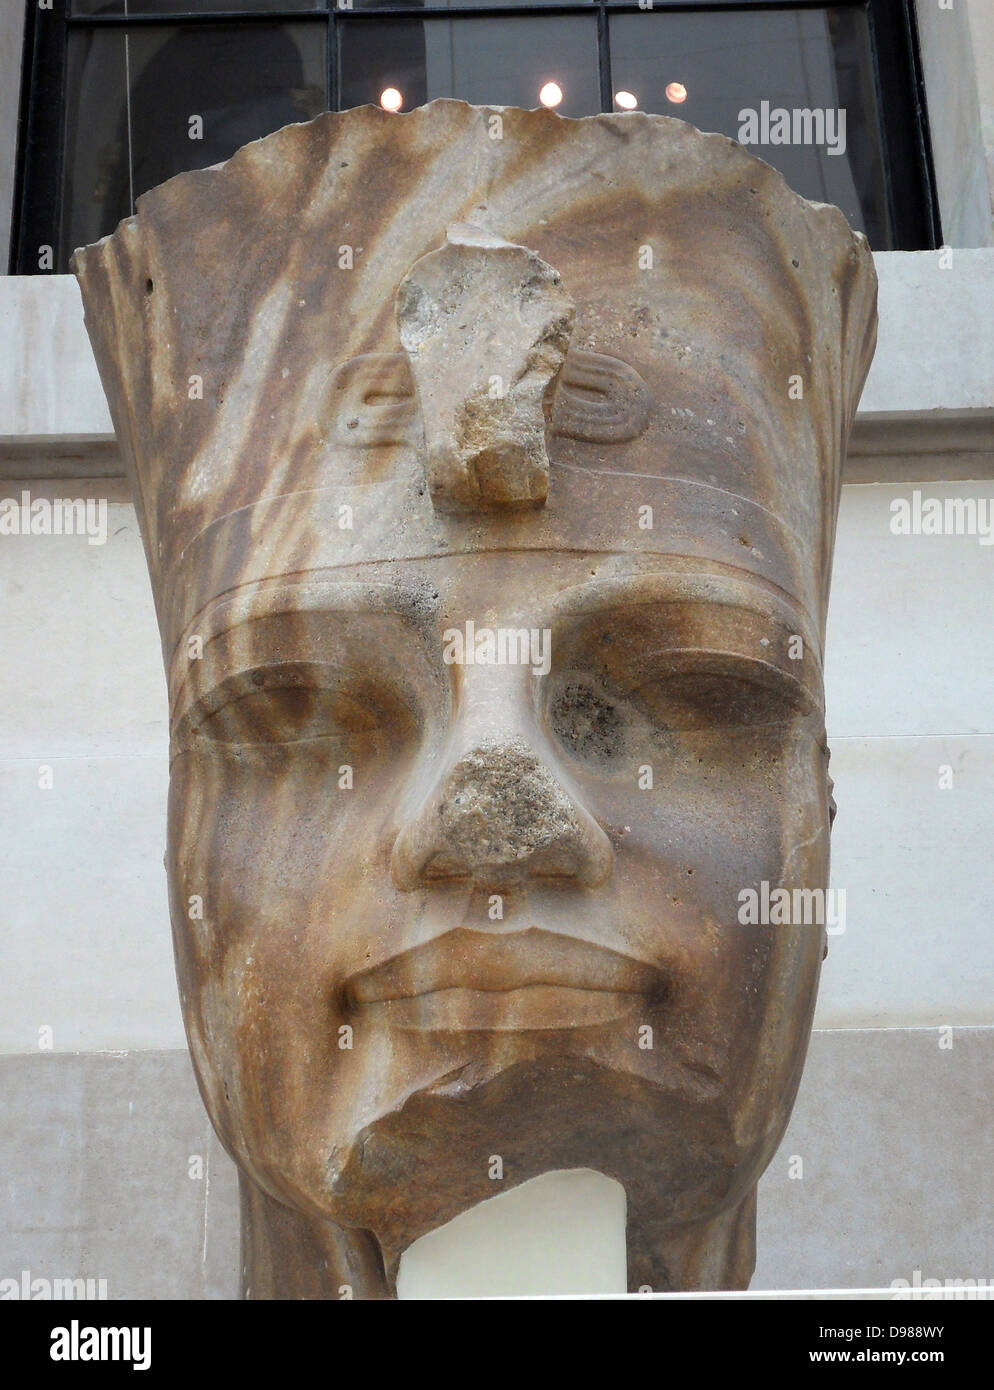 Kopf von einer Statue des Amenhotep III. aus dem Totentempel von Amenophis III, Theben, Ägypten, 18. Dynastie, etwa 1350 v. Chr.. Tragen die Rote Krone von Unterägypten der Totentempel von Amenophis III (1390-1352 v. Chr.) am Westufer des Nils in Theben eine große Anzahl von Statuen enthalten. Dieser Kopf ist eine der größten, nach der nahe gelegenen Kolosse von Memnon. Stockfoto